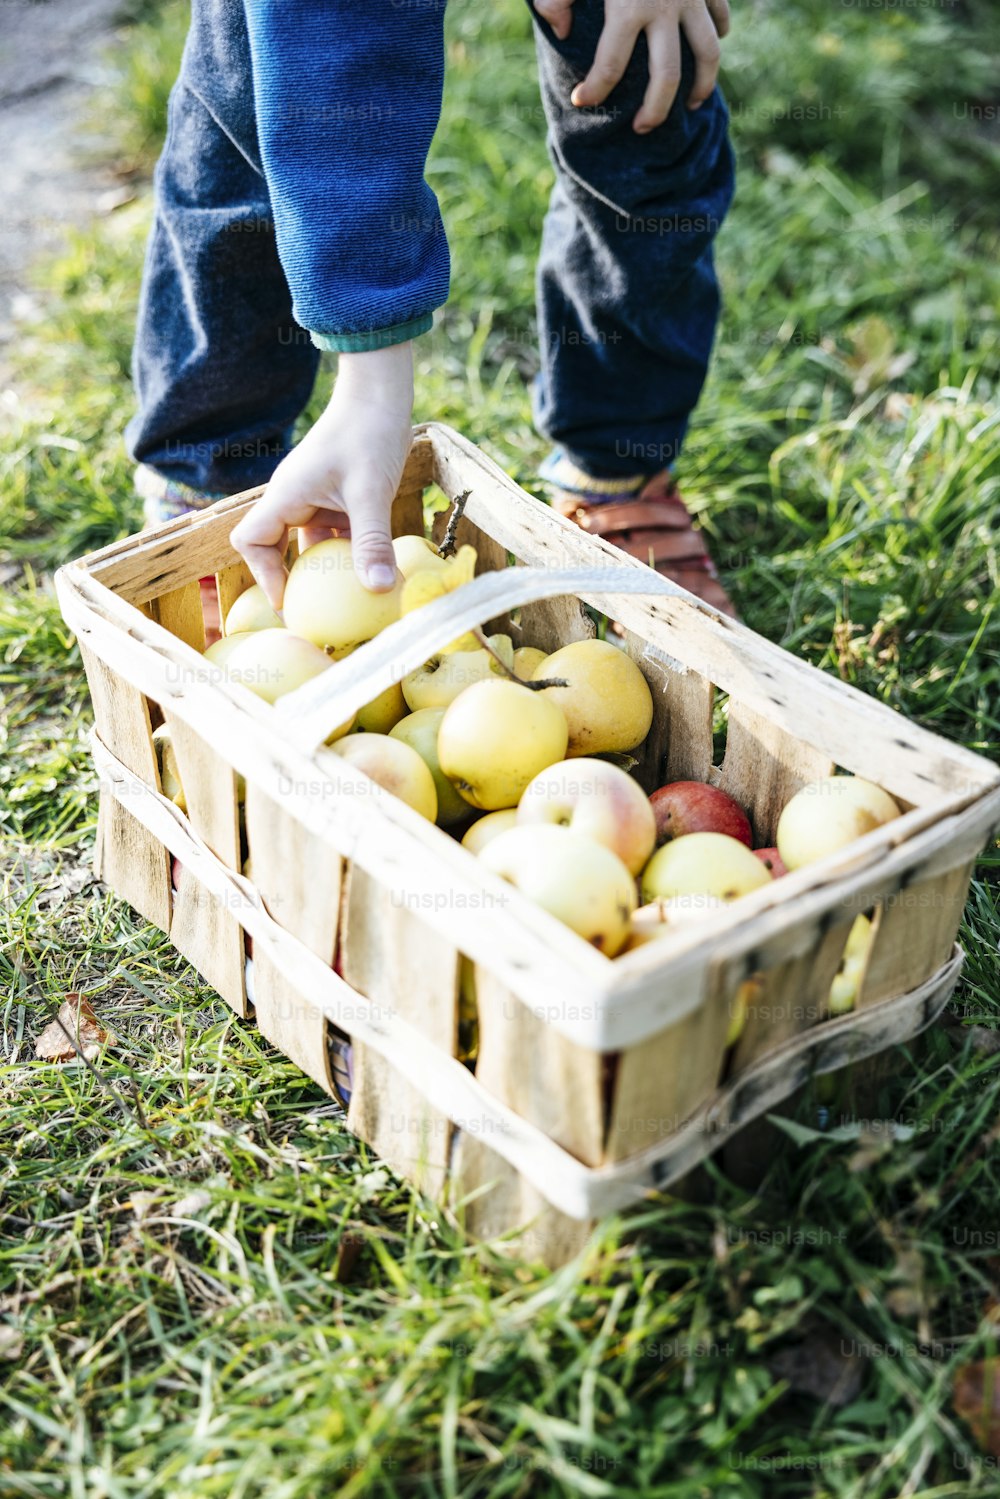 Un niño recogiendo manzanas de una canasta en la hierba